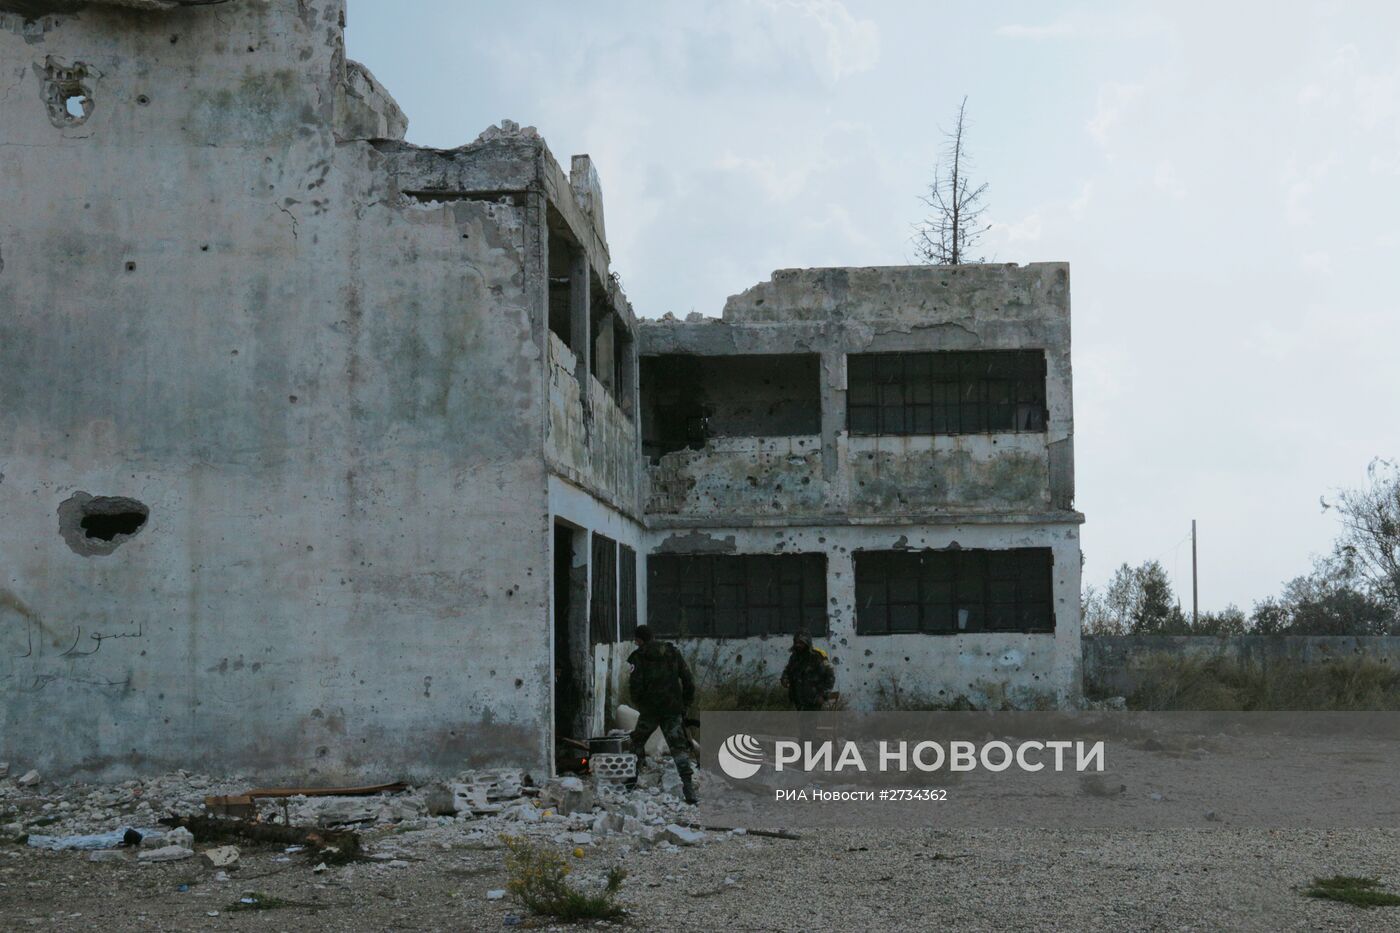 Сирийская армия при поддержке российской боевой авиации взяла под контроль поселок Гмам в провинции Латакия